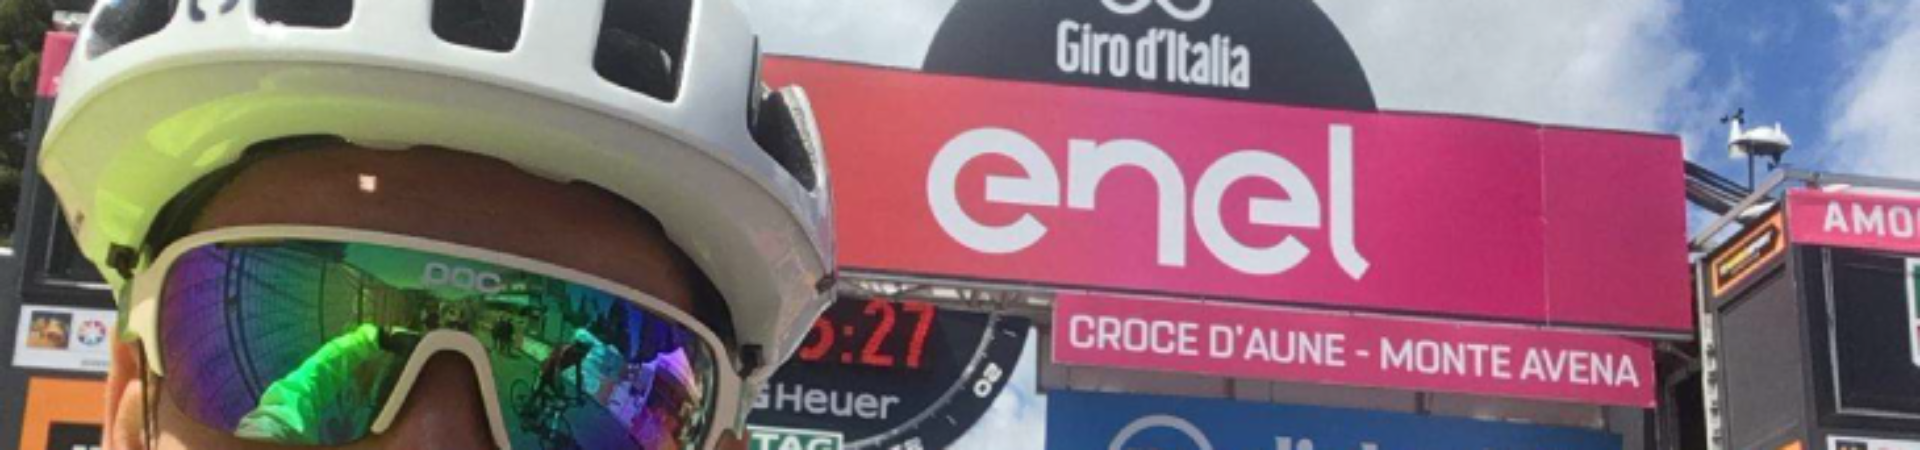 Miben múlja felül a Giro D’Italia még a Formula-1-et is?